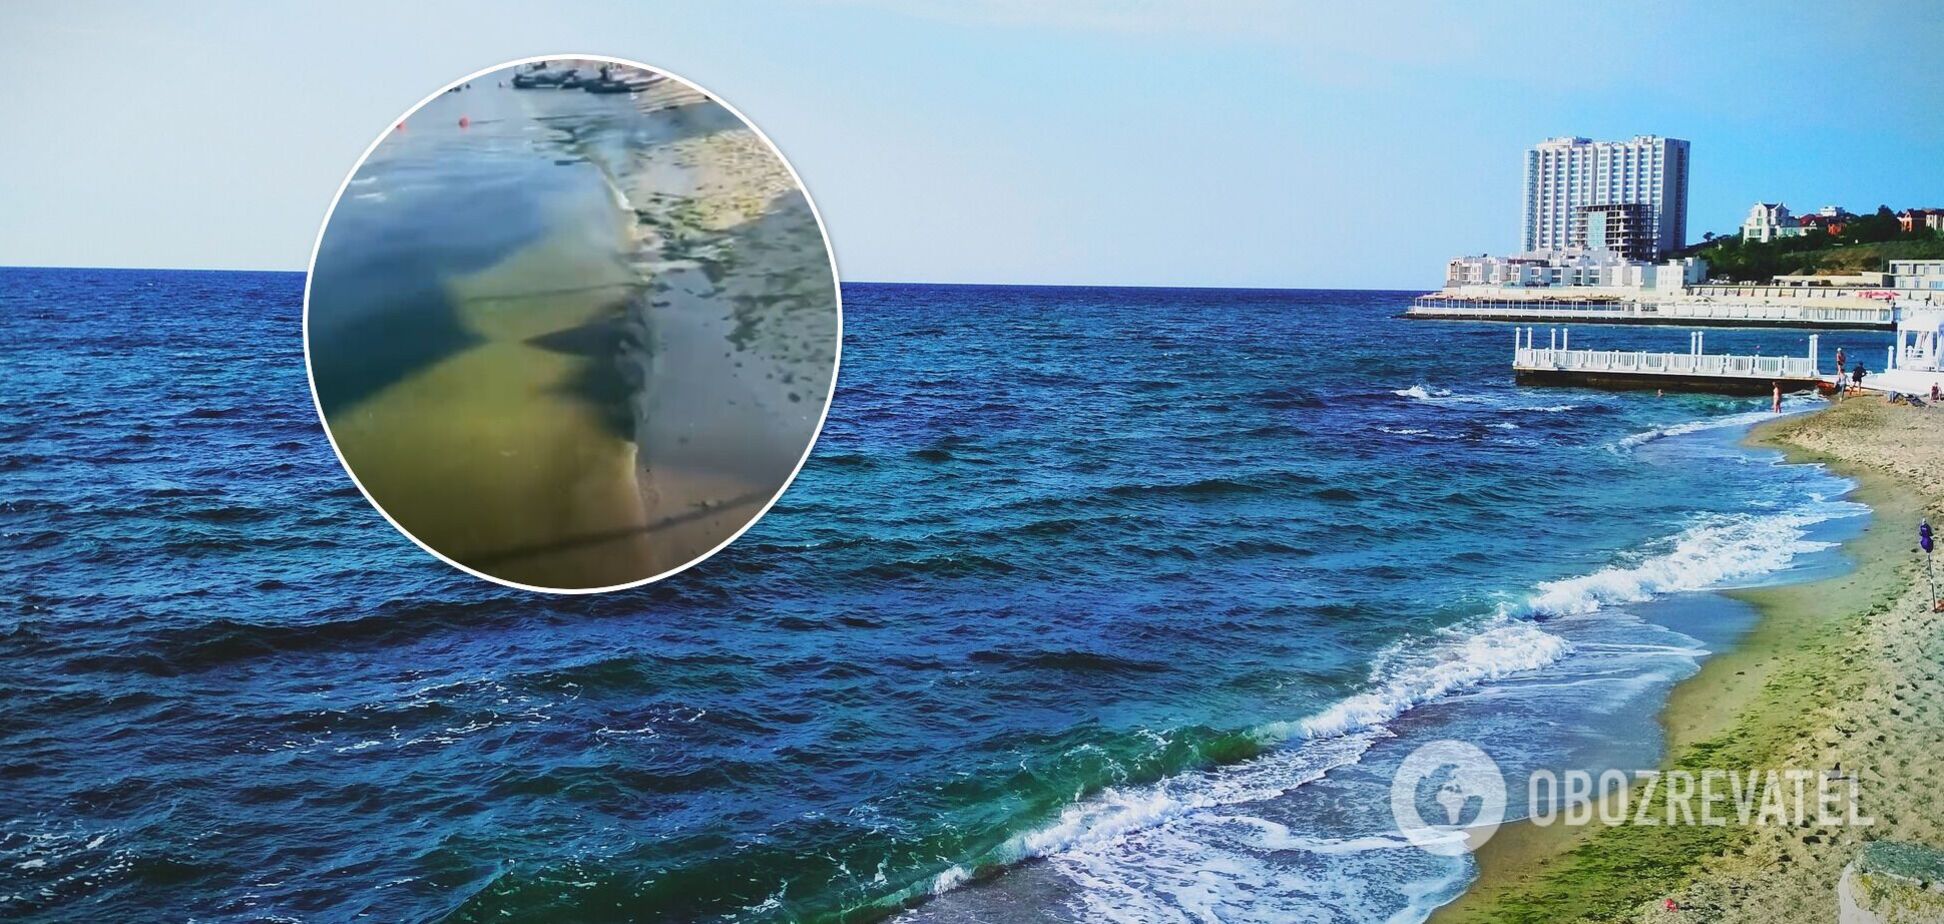 Ніхто не купається, стоїть страшний сморід: турист поскаржився на відпочинок в Одесі. Відео